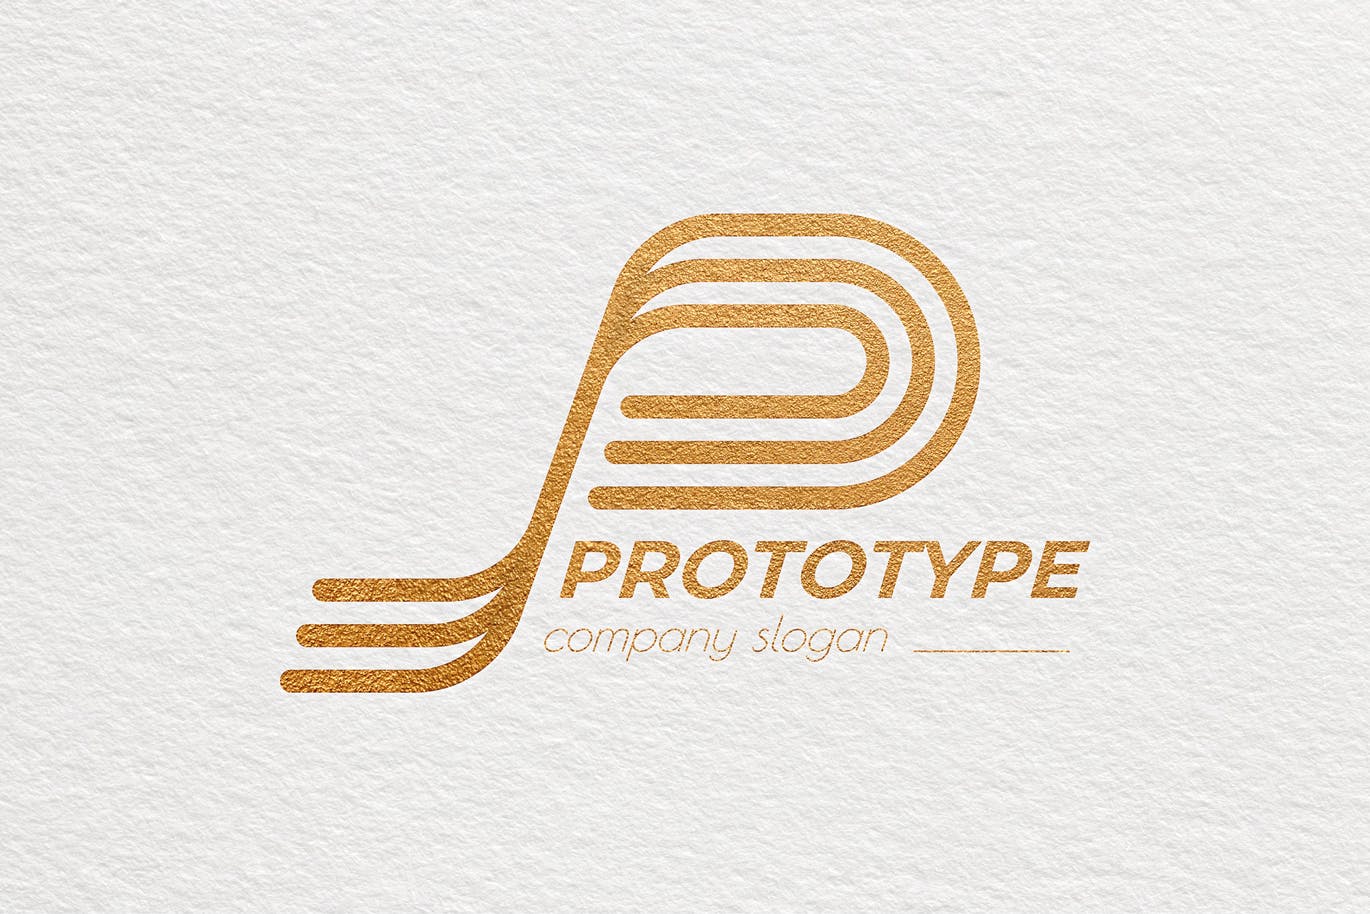 原型设计主题创意图形Logo设计第一素材精选模板 Prototype Creative Logo Template插图(3)